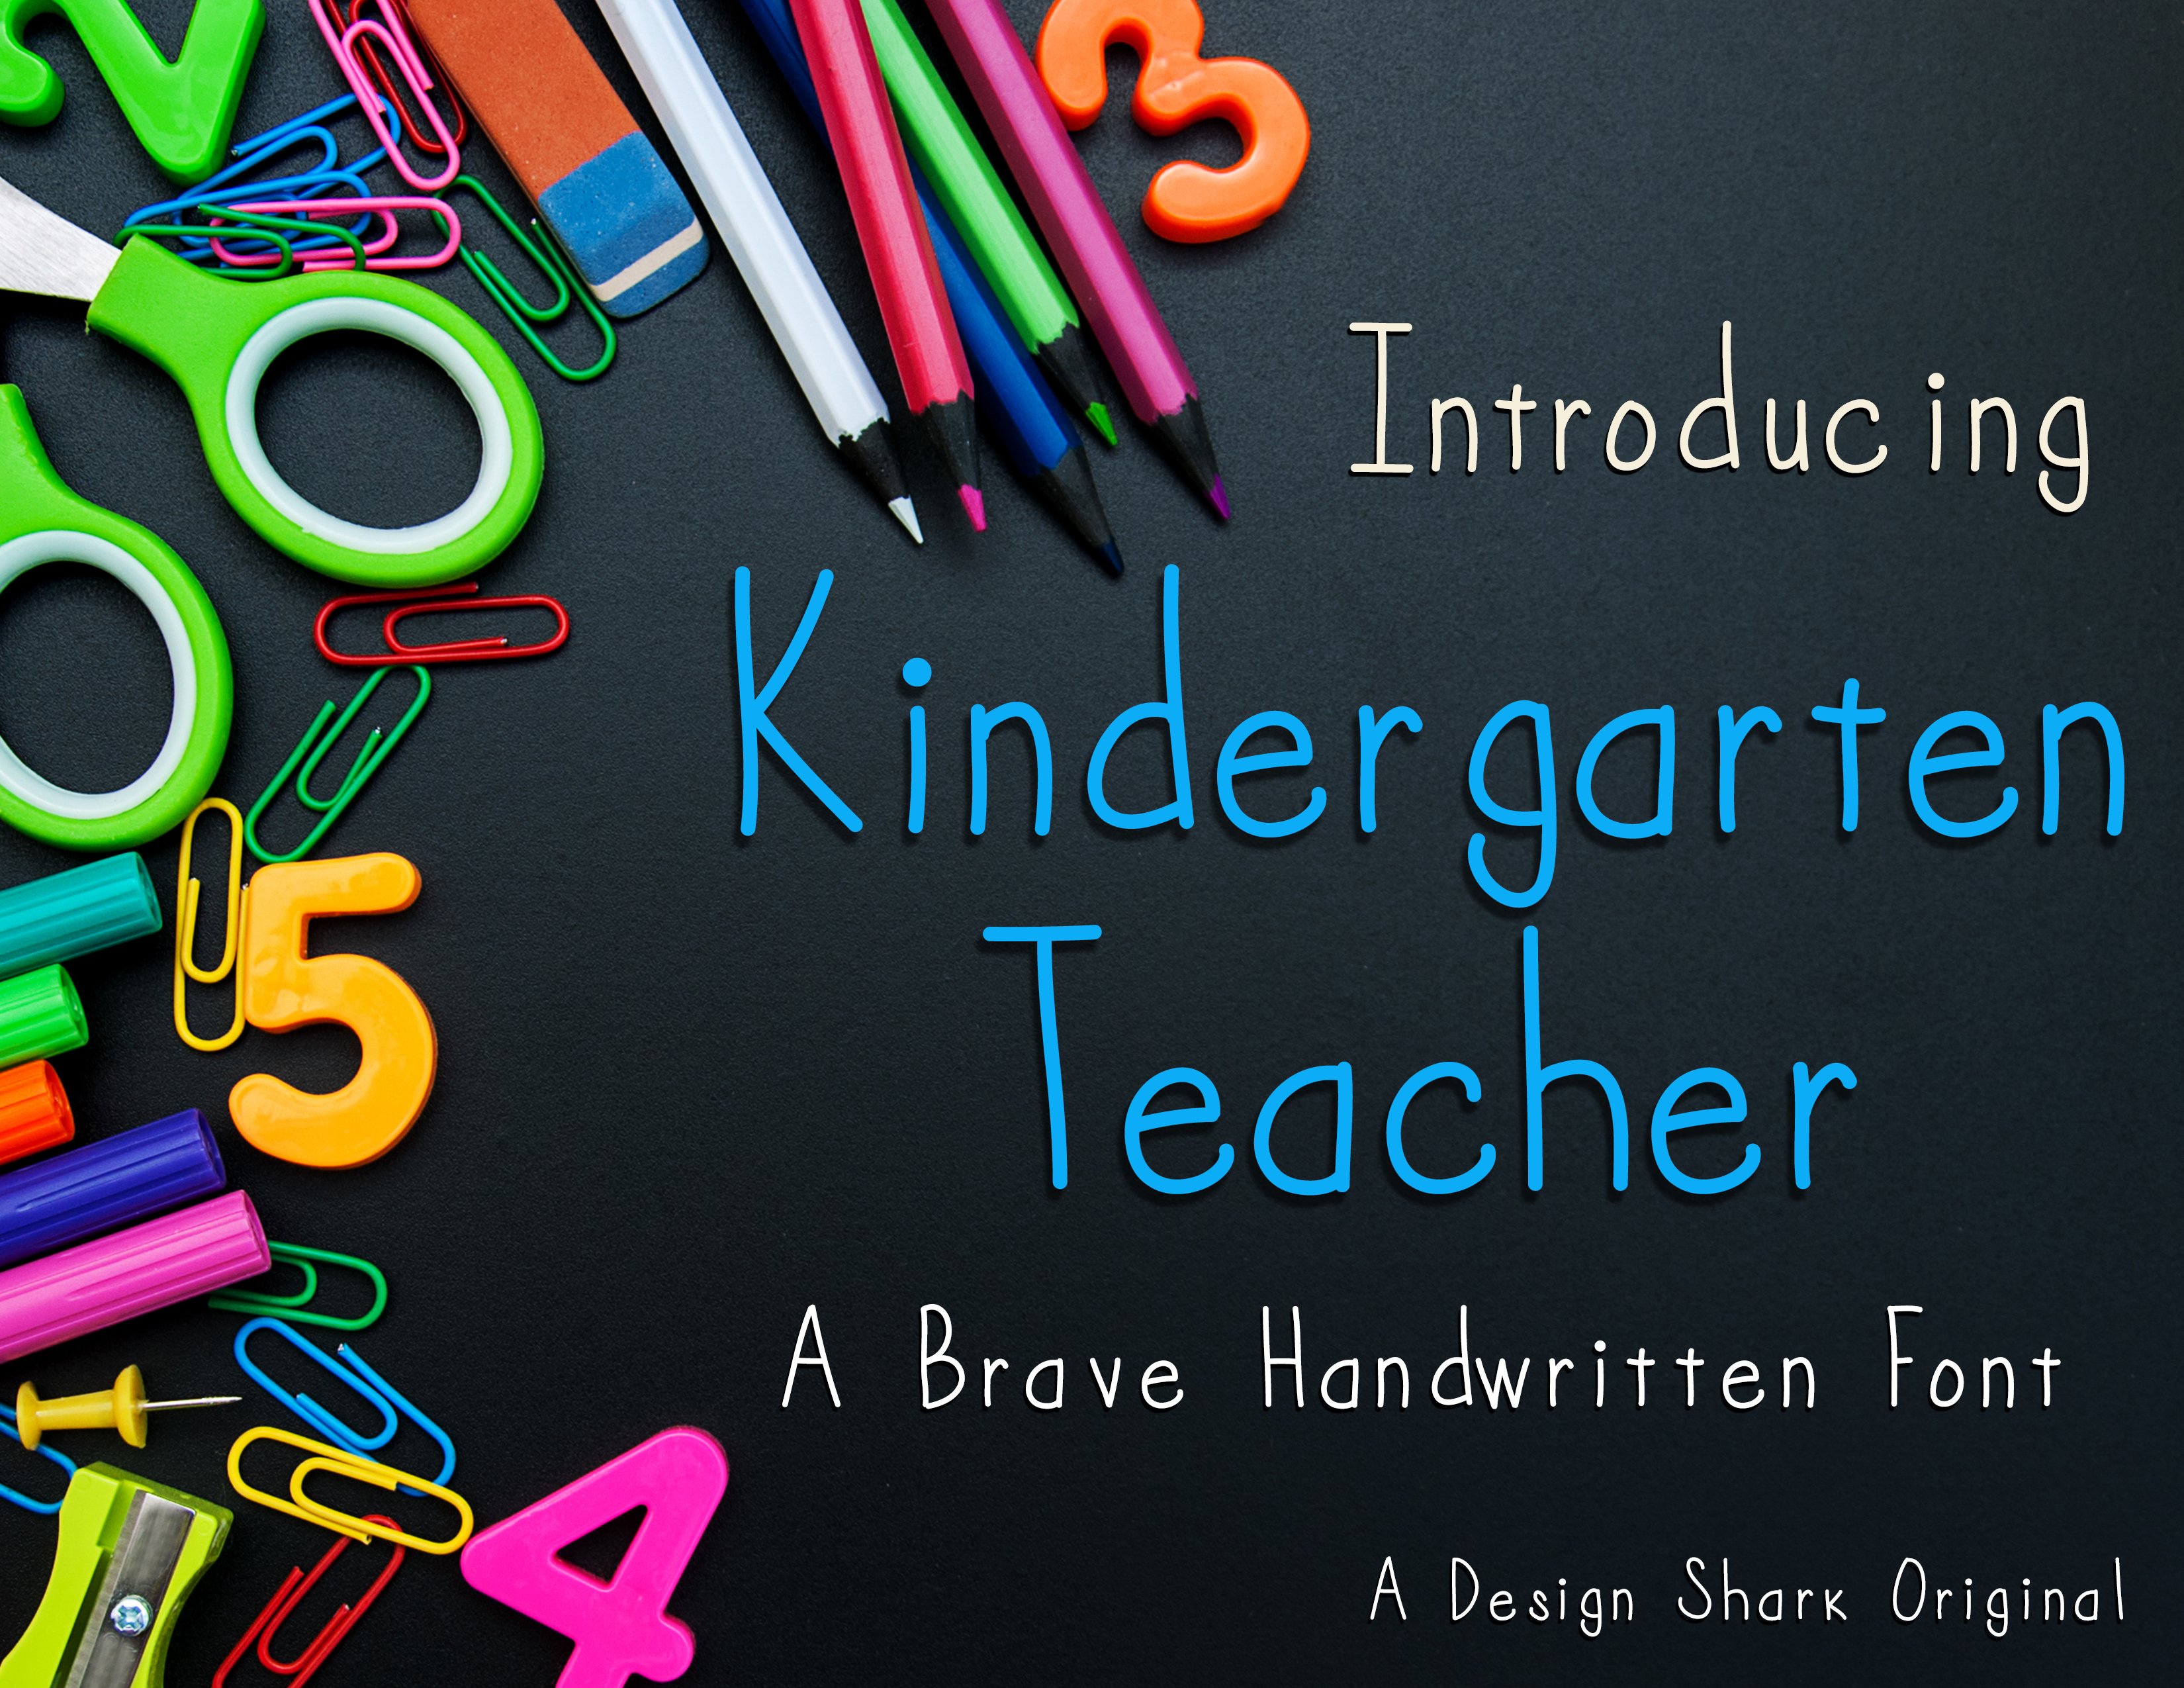 Kindergarten Teacher cover image.